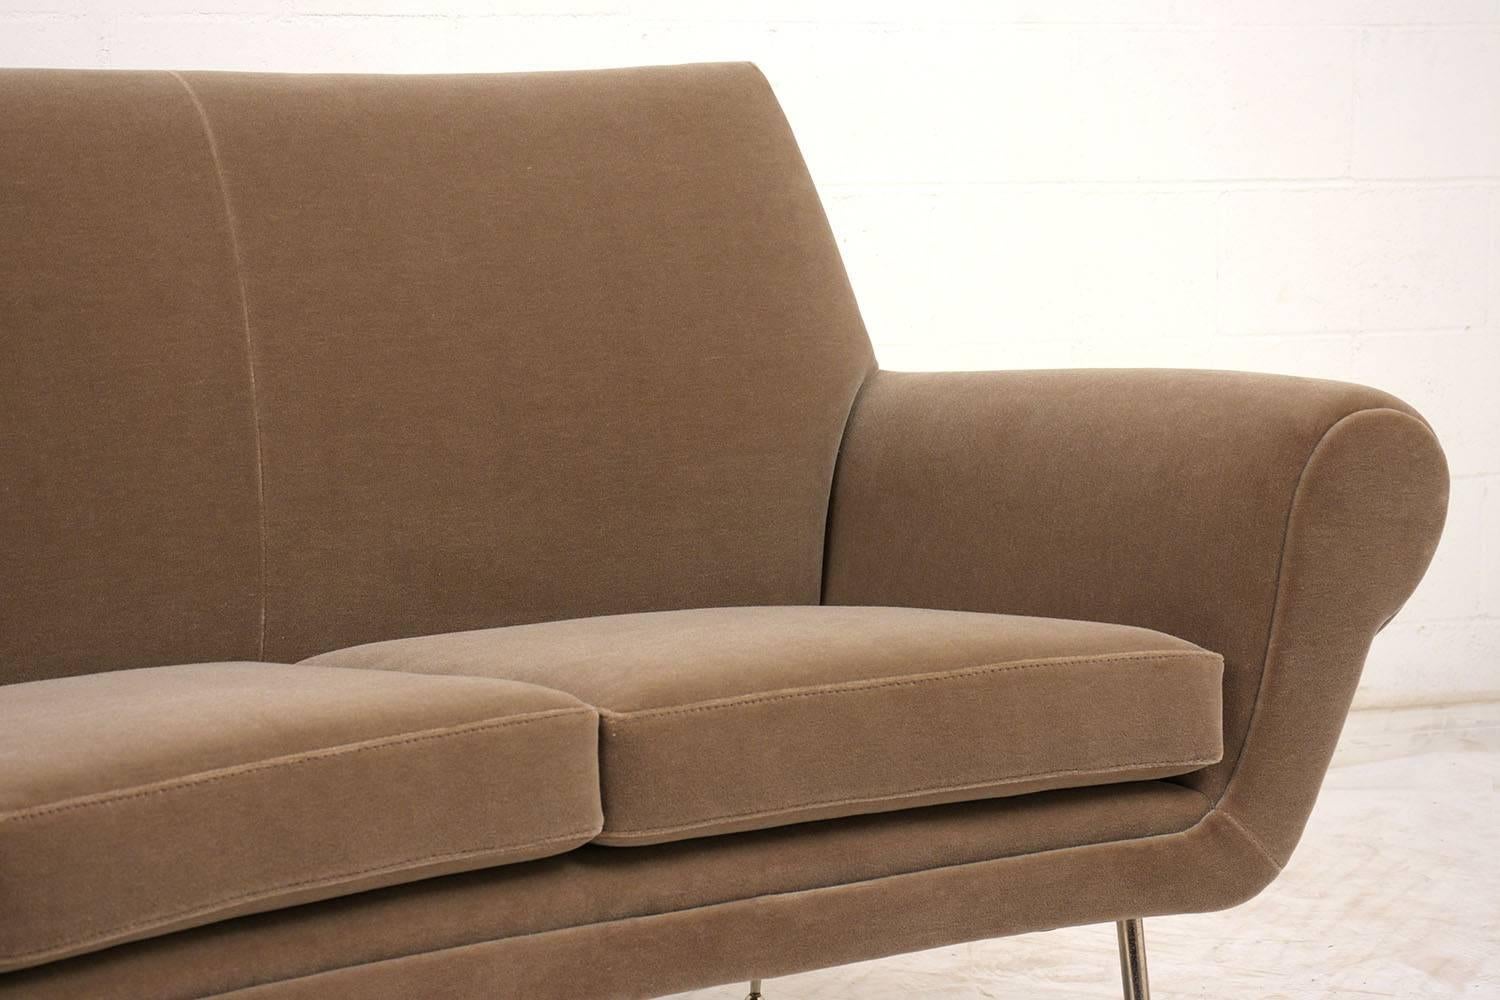 curved modern sofa